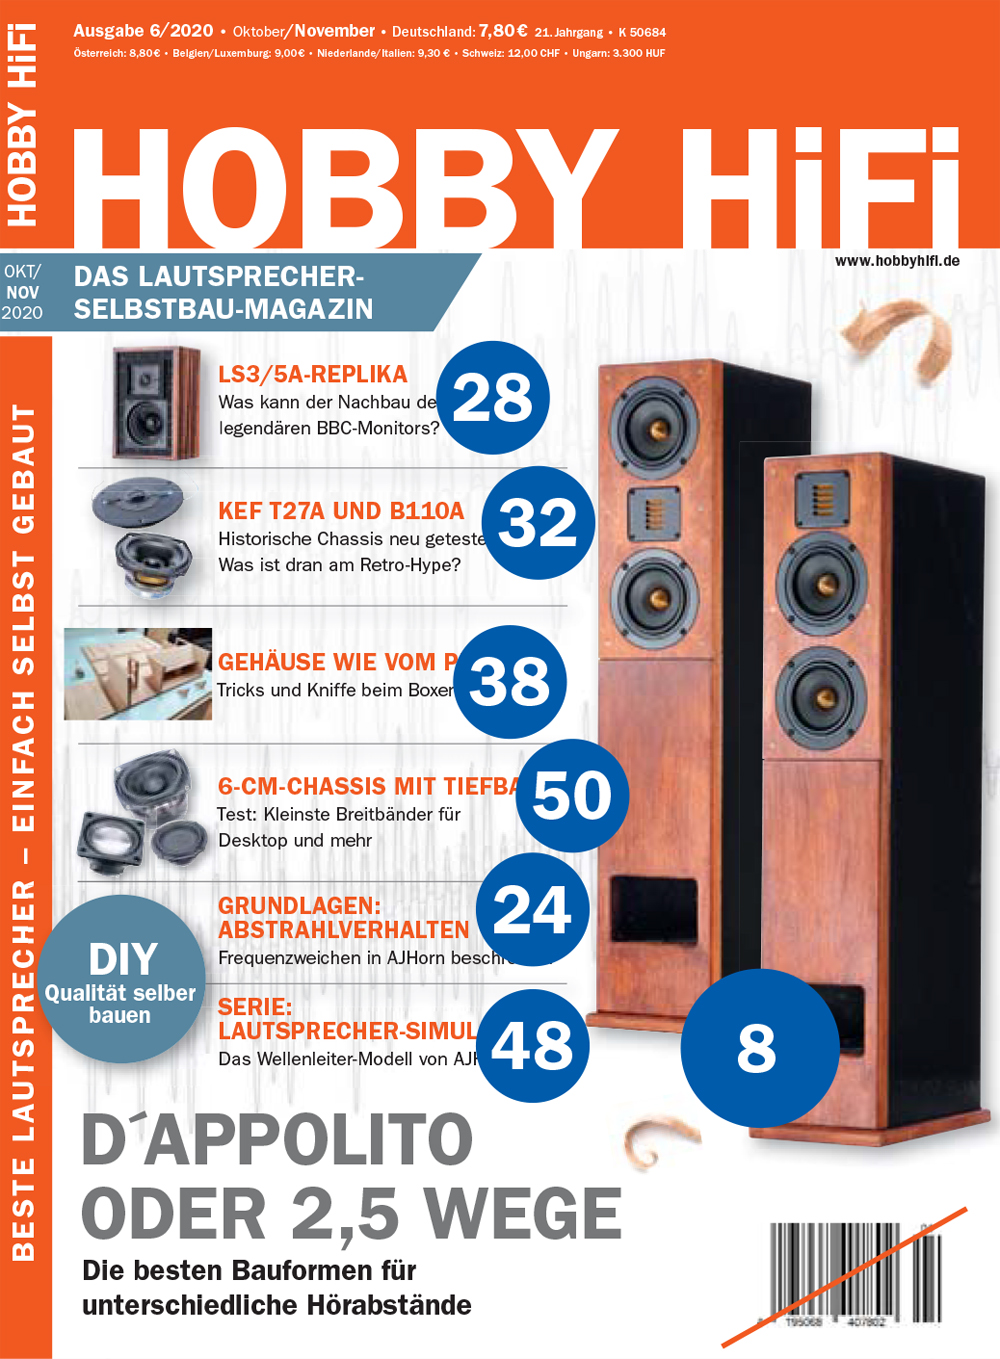 Hobby Hifi 2020 Issue 06 - 2020 